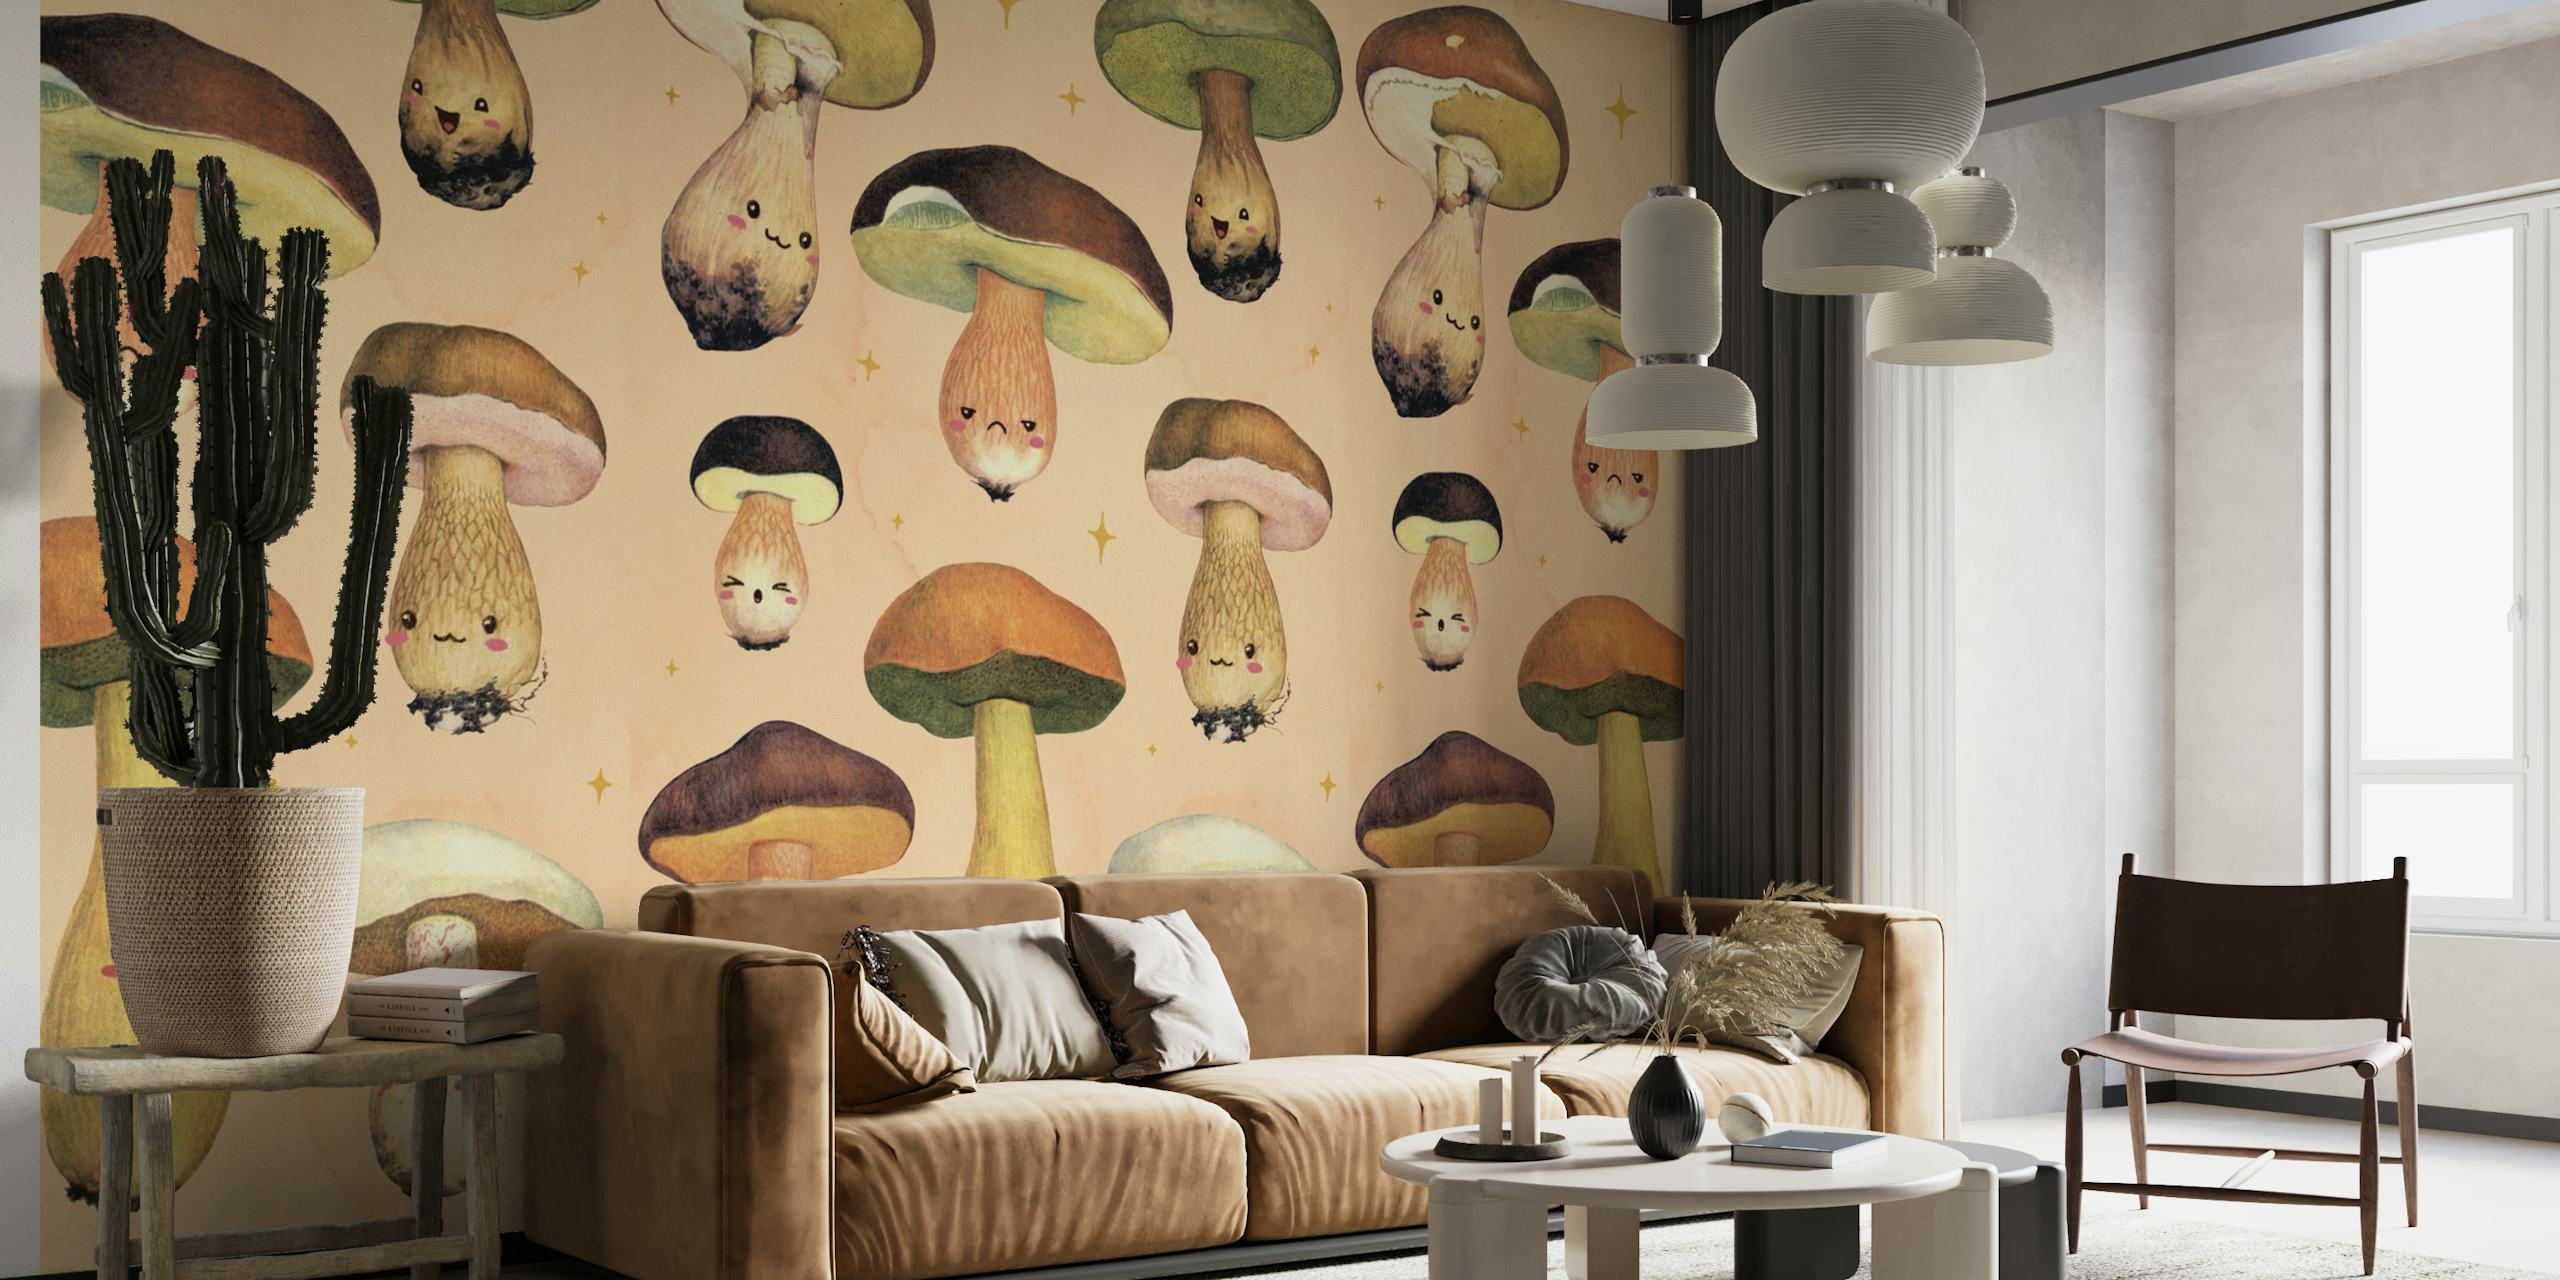 Illustrert Happy Forest Mushroom veggmaleri med lunefulle soppfigurer på en varm bakgrunn